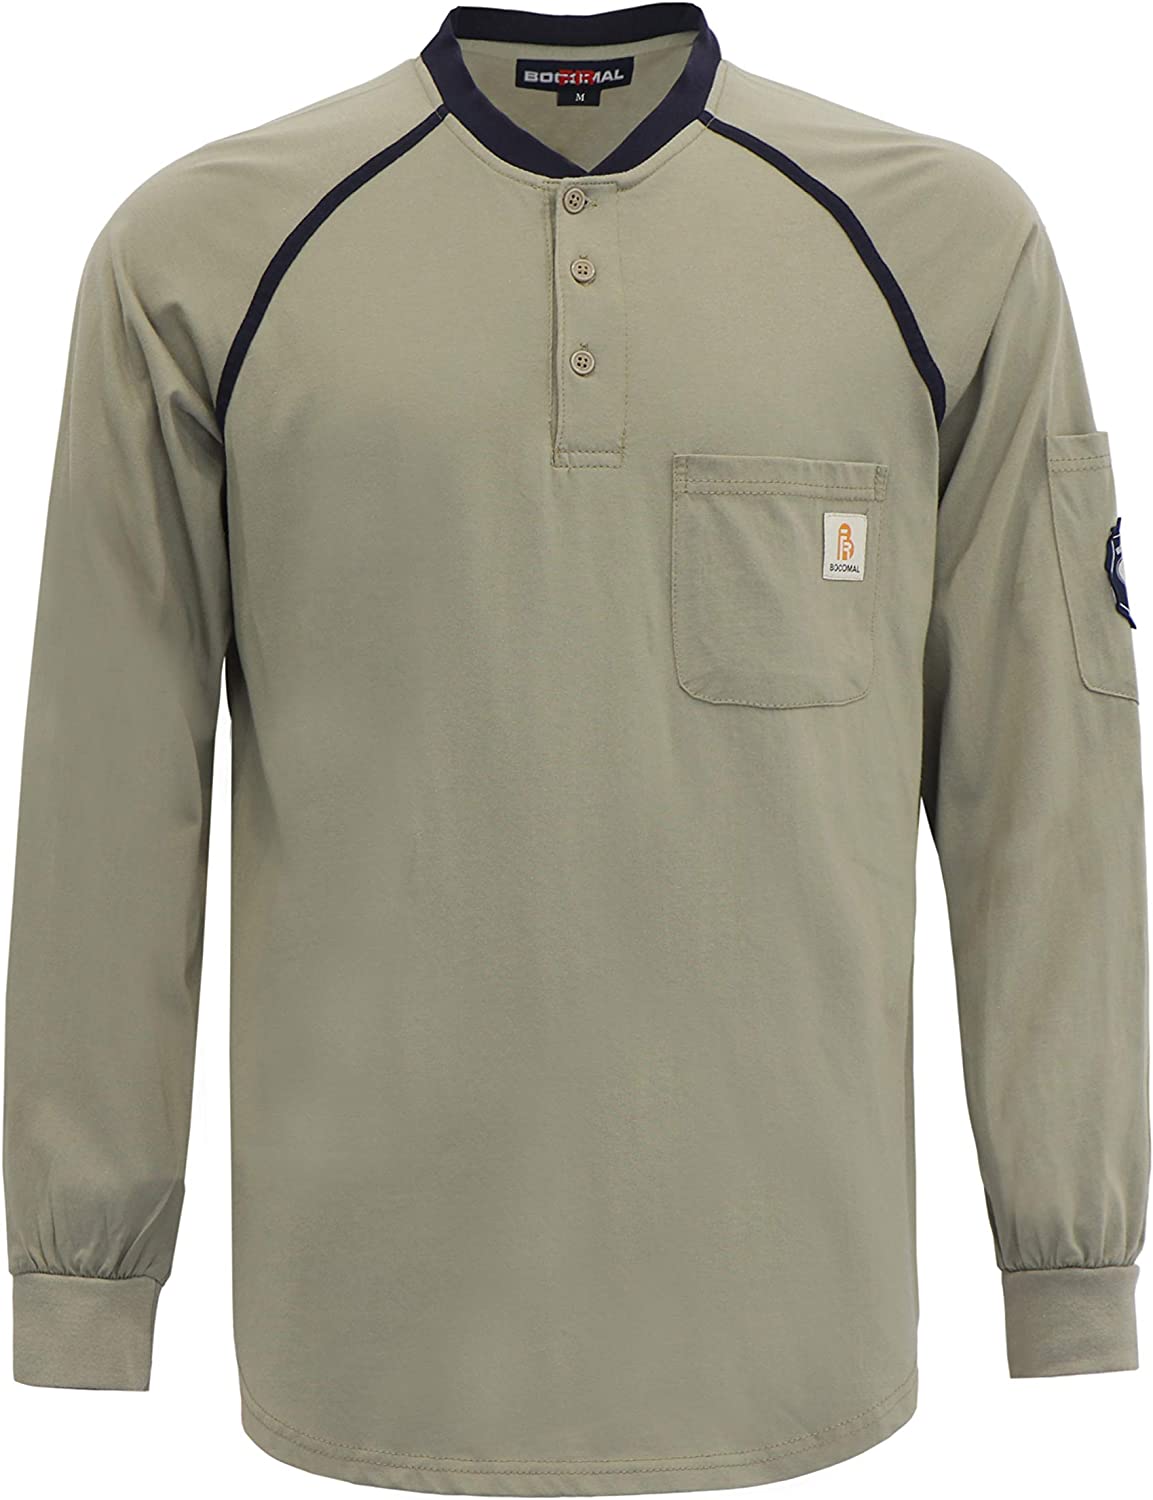 Shirts 5.5oz Light Weight for Summer Henley Shirts Flame Resistant/Fire Retardant Shirt